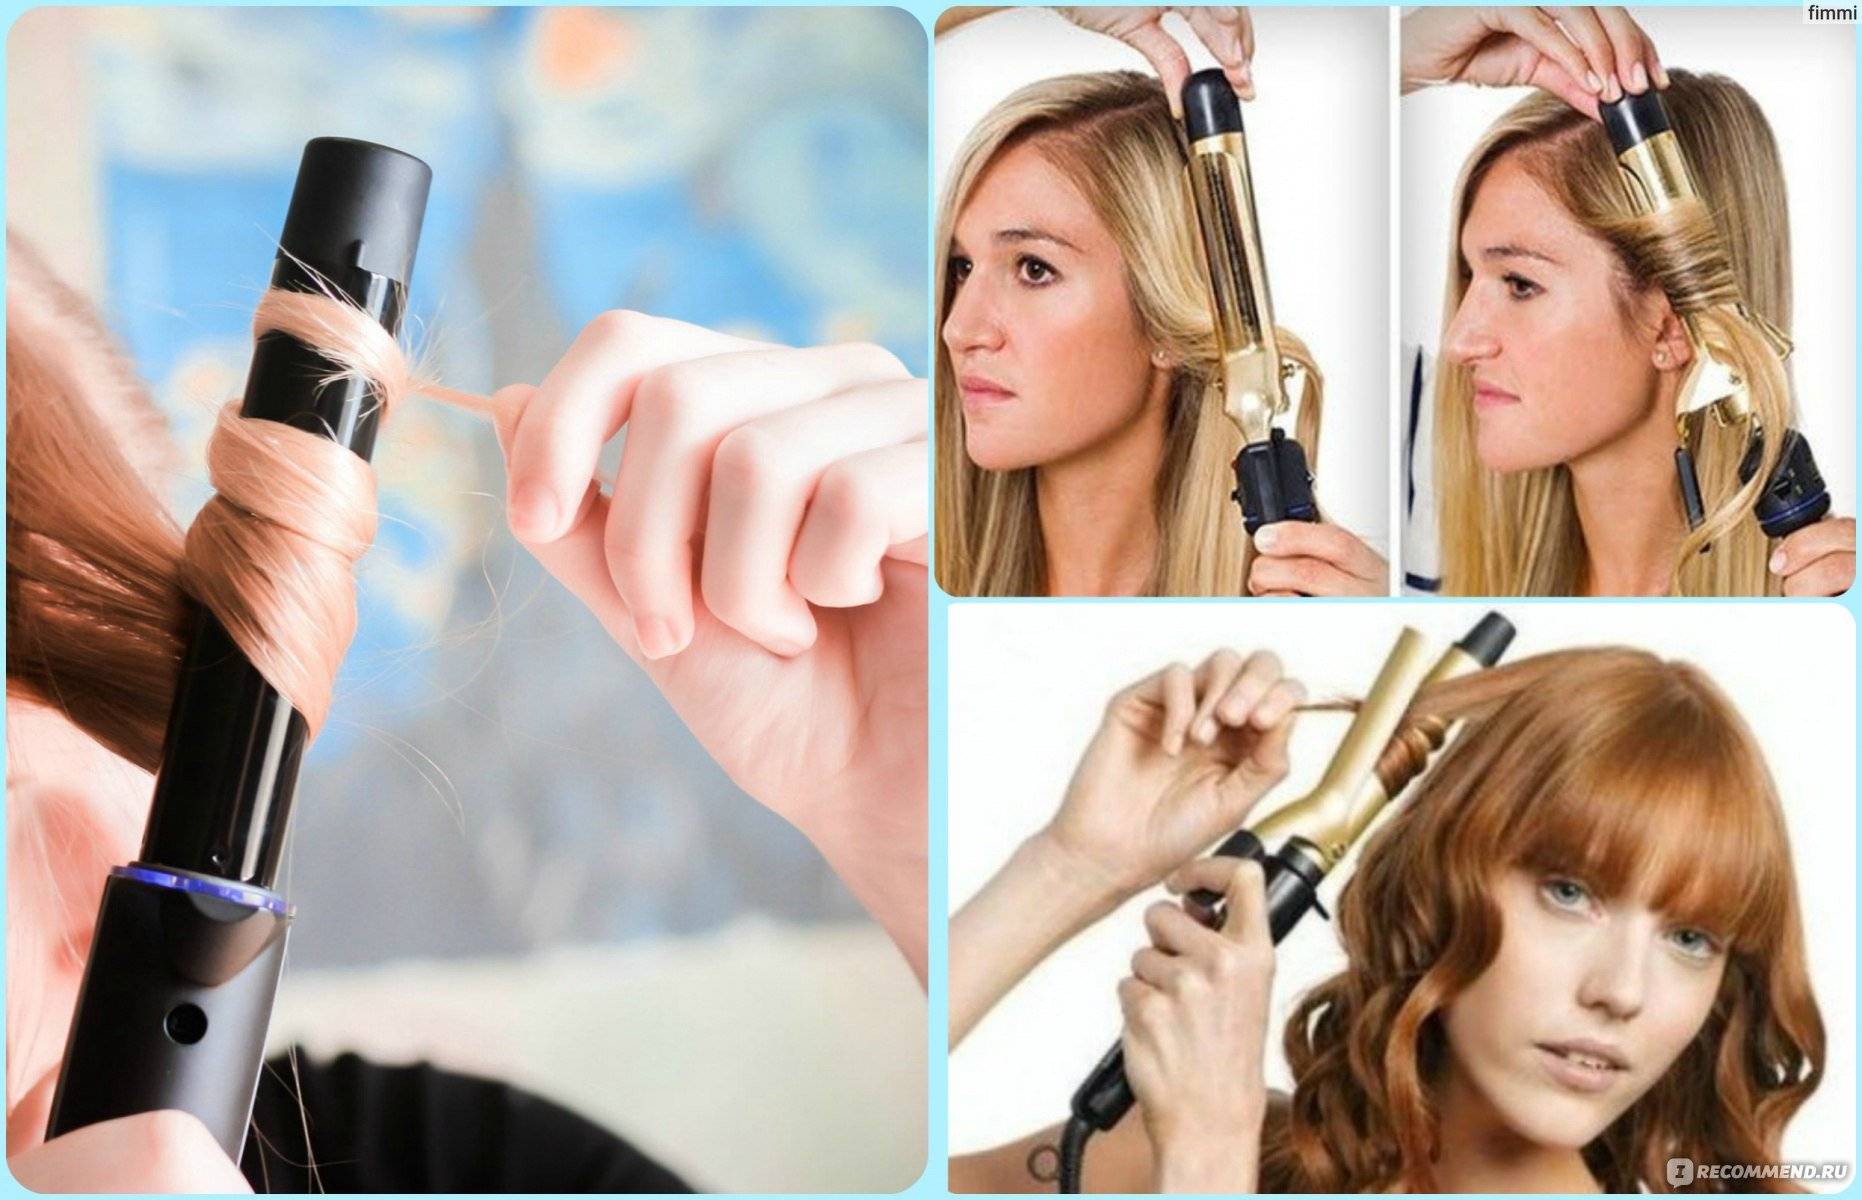 Плойка для волос: секреты красивой завивки и практические советы, как не ошибиться при выборе приборакапелита